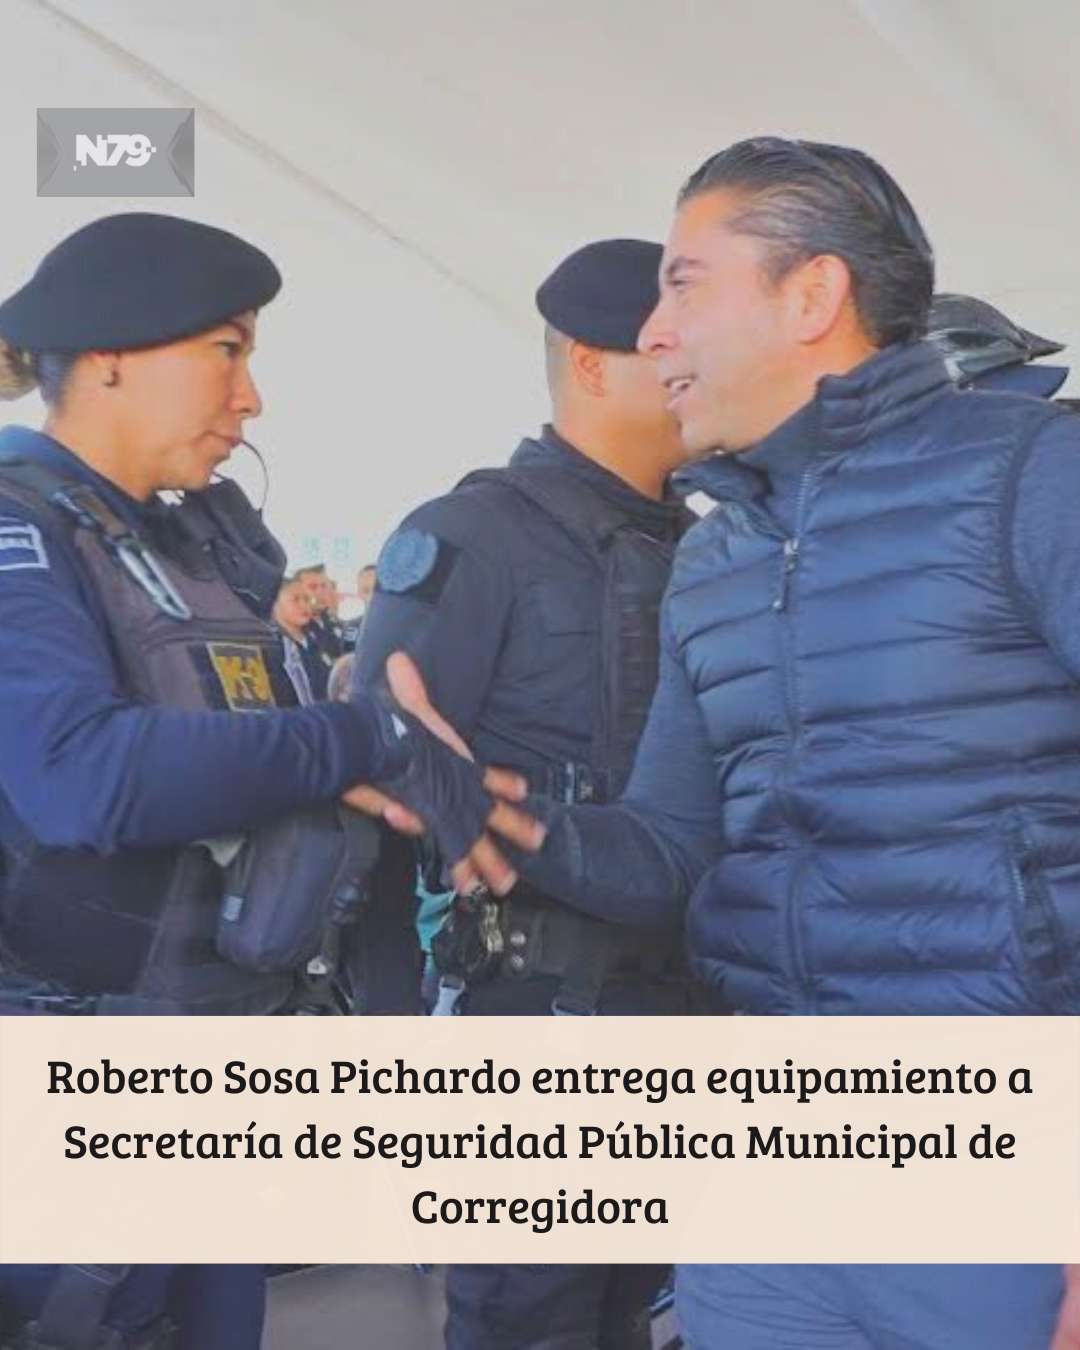 Roberto Sosa Pichardo entrega equipamiento a Secretaría de Seguridad Pública Municipal de Corregidora